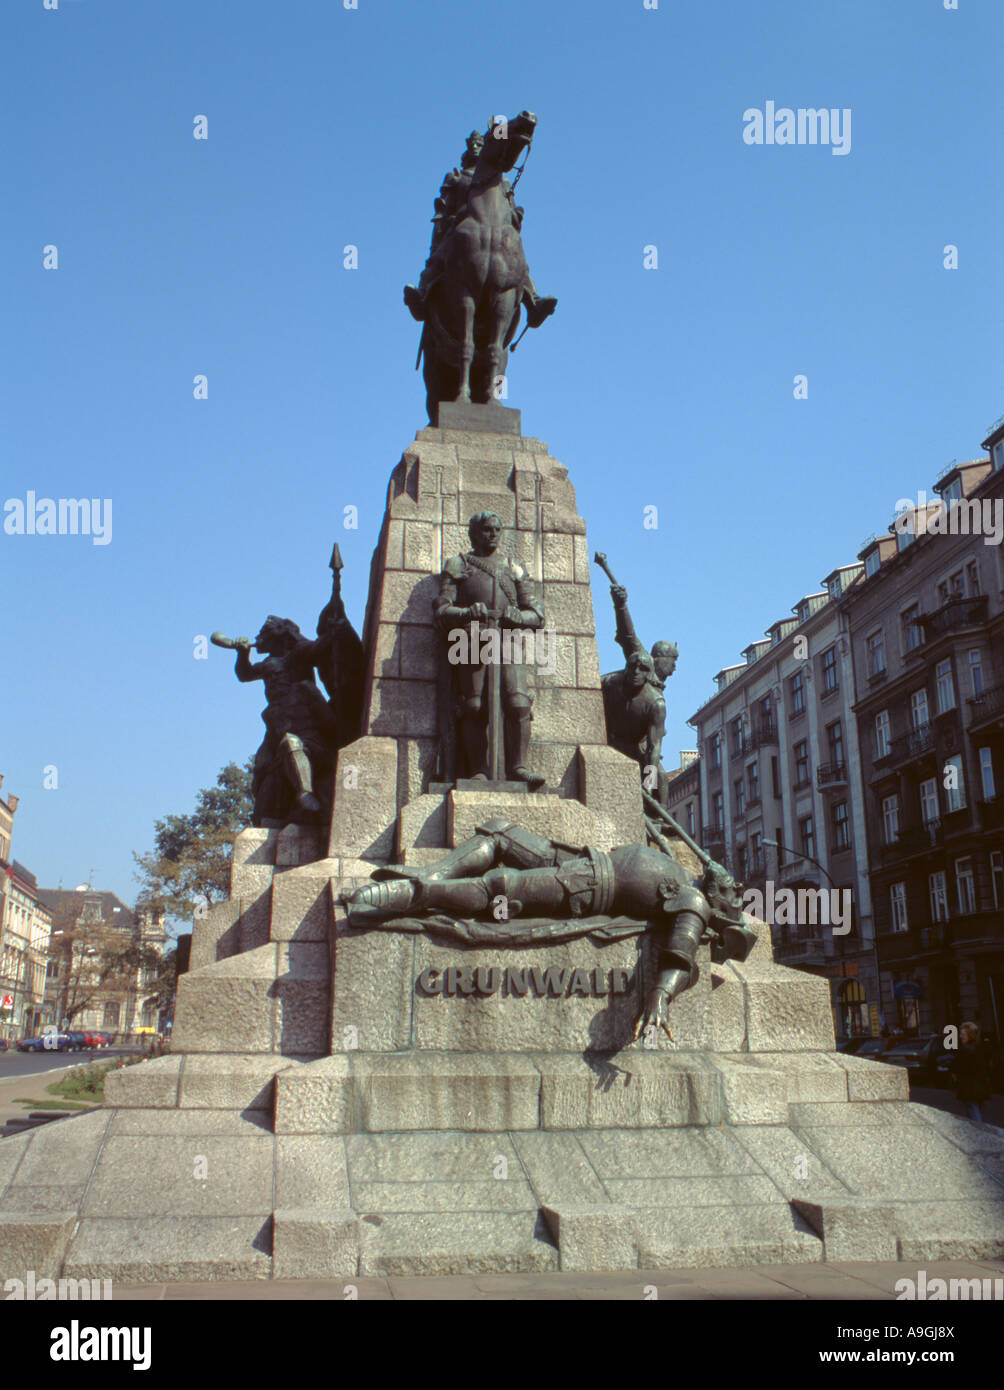 Denkmal für die Schlacht von Grunwald, 15. Juli 1410, Krakow, malopolska, Polen. Stockfoto